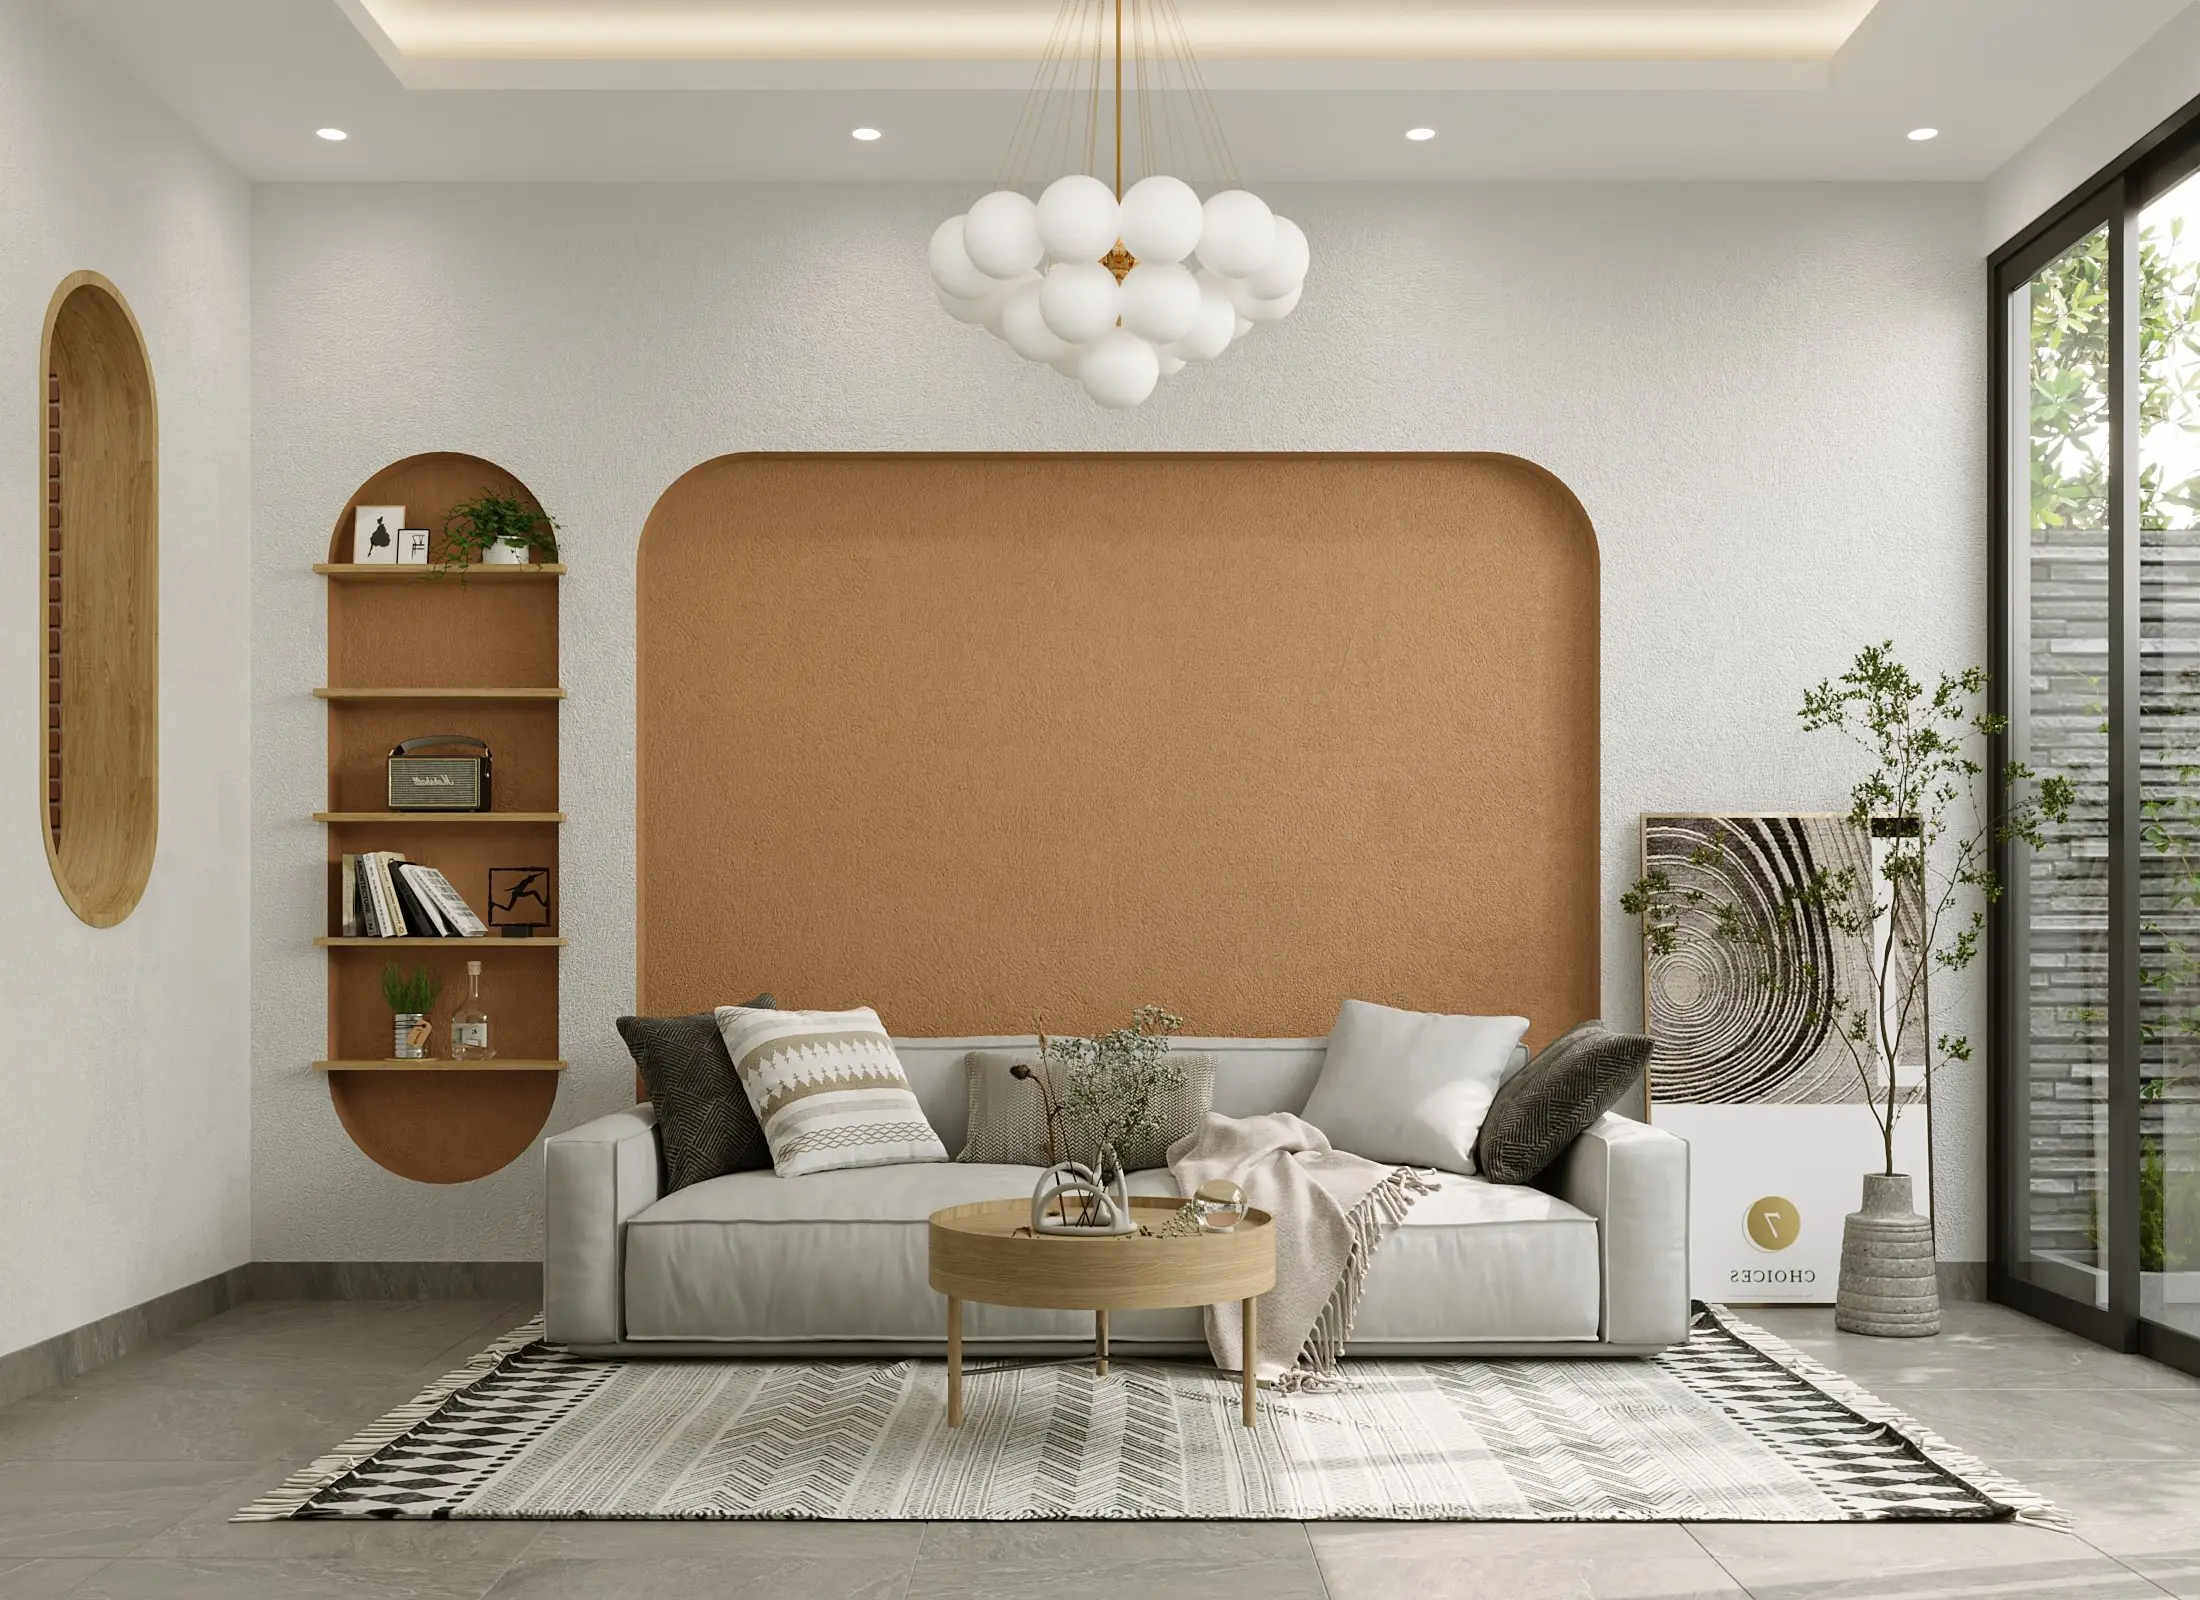 Thiết kế nội thất Scandinavian: Đơn giản và tinh tế cho không gian sống của bạn